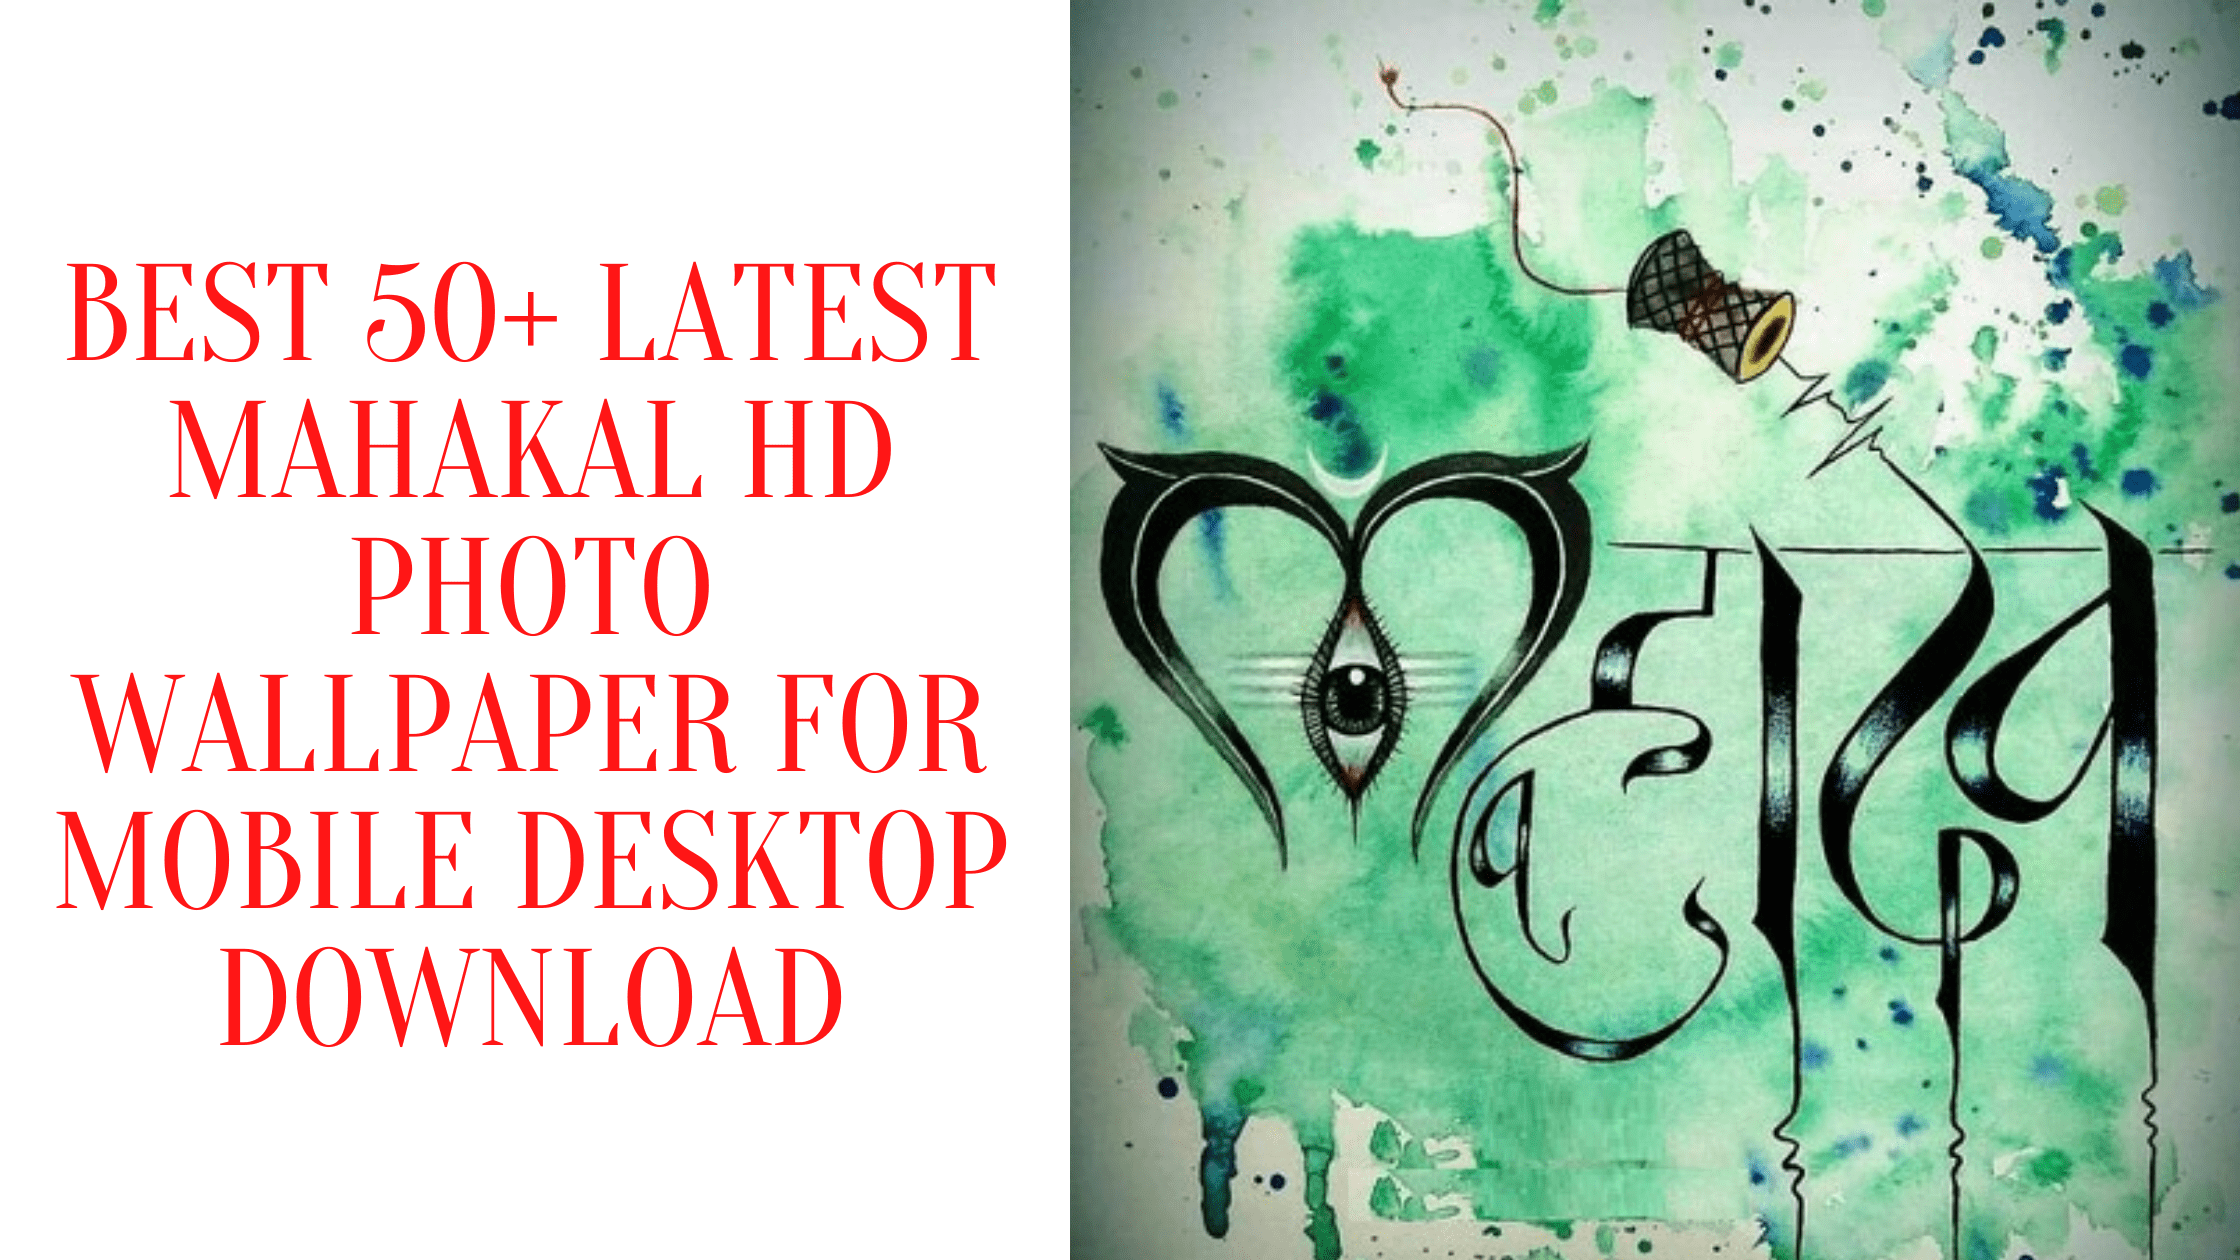 Best 50+ Latest Mahakal HD Photo Wallpaper For Mobile Desktop Download